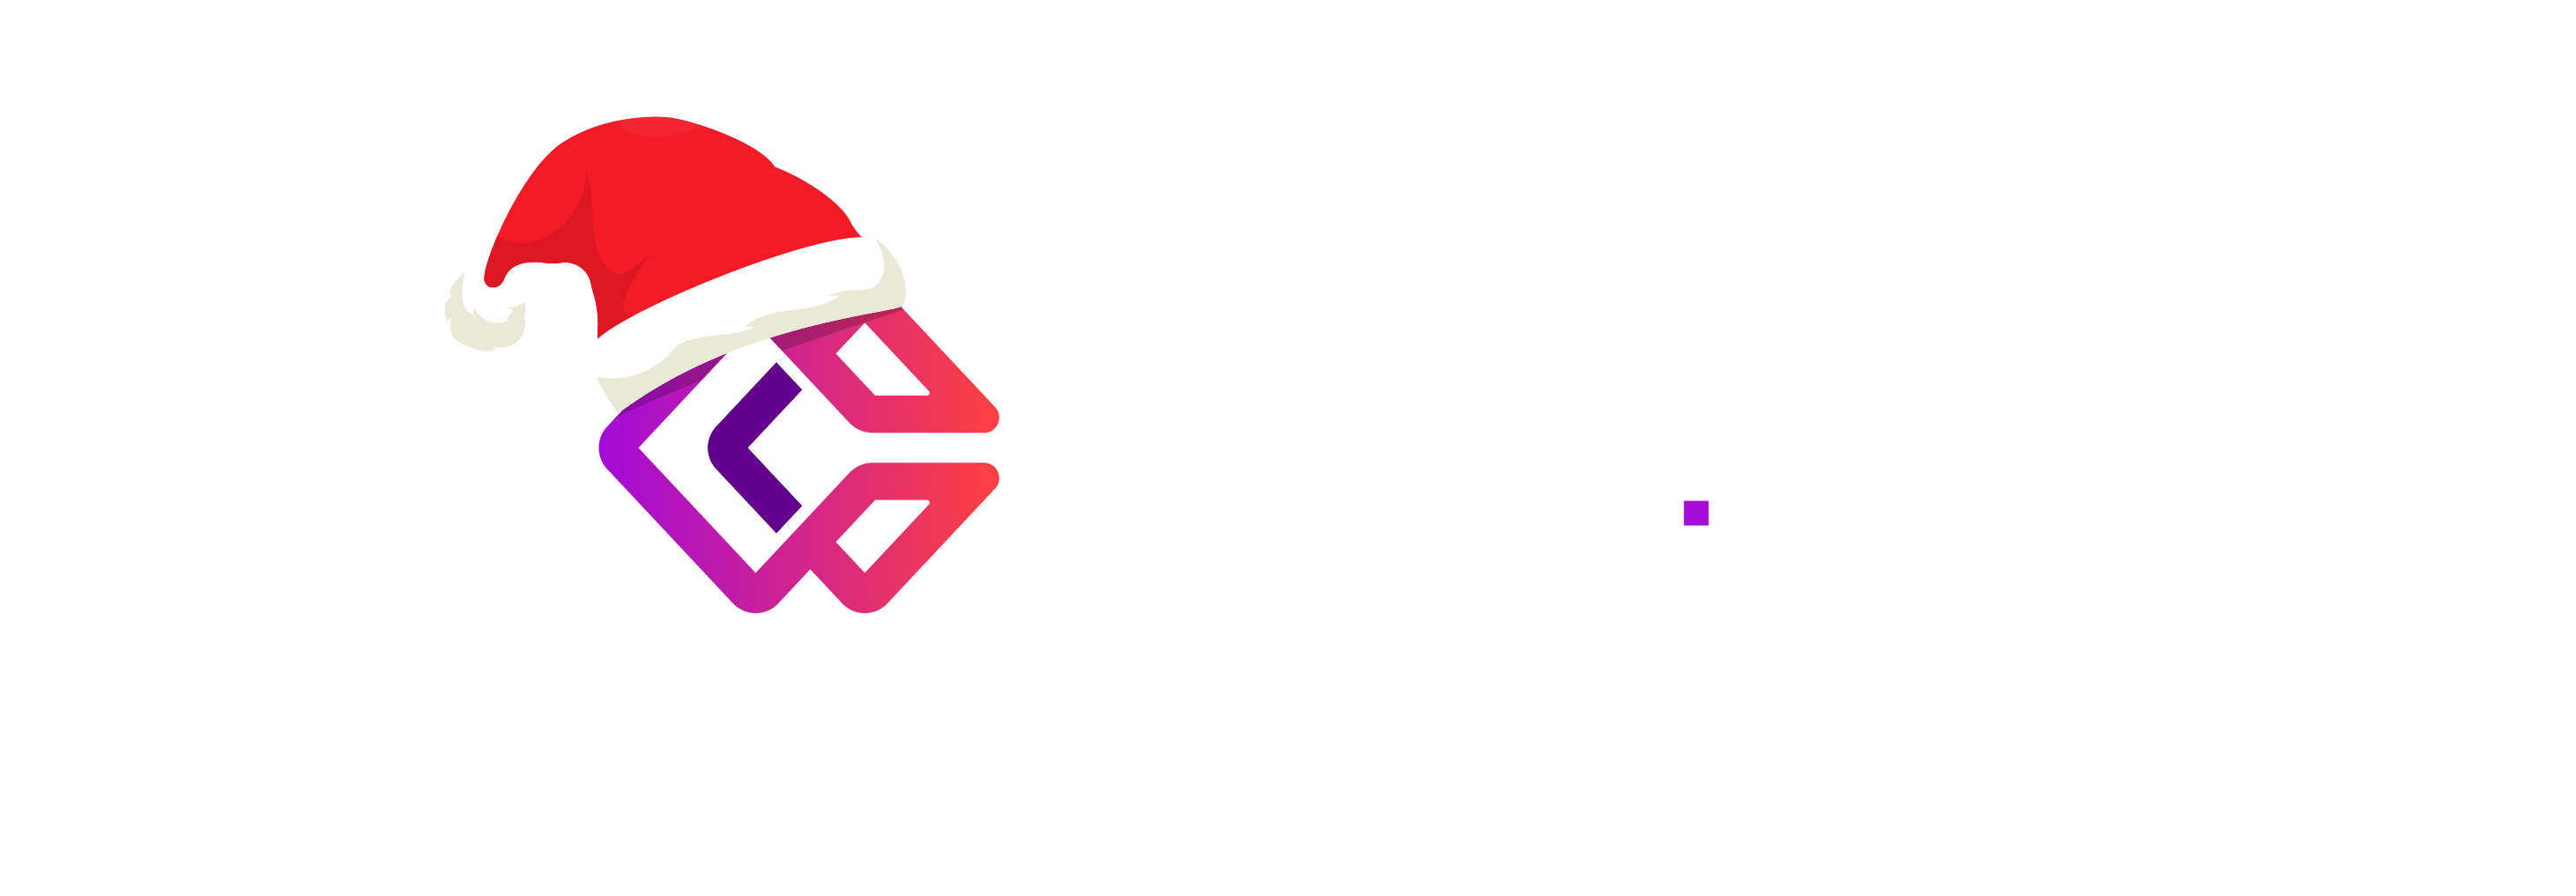 erasebg-logo